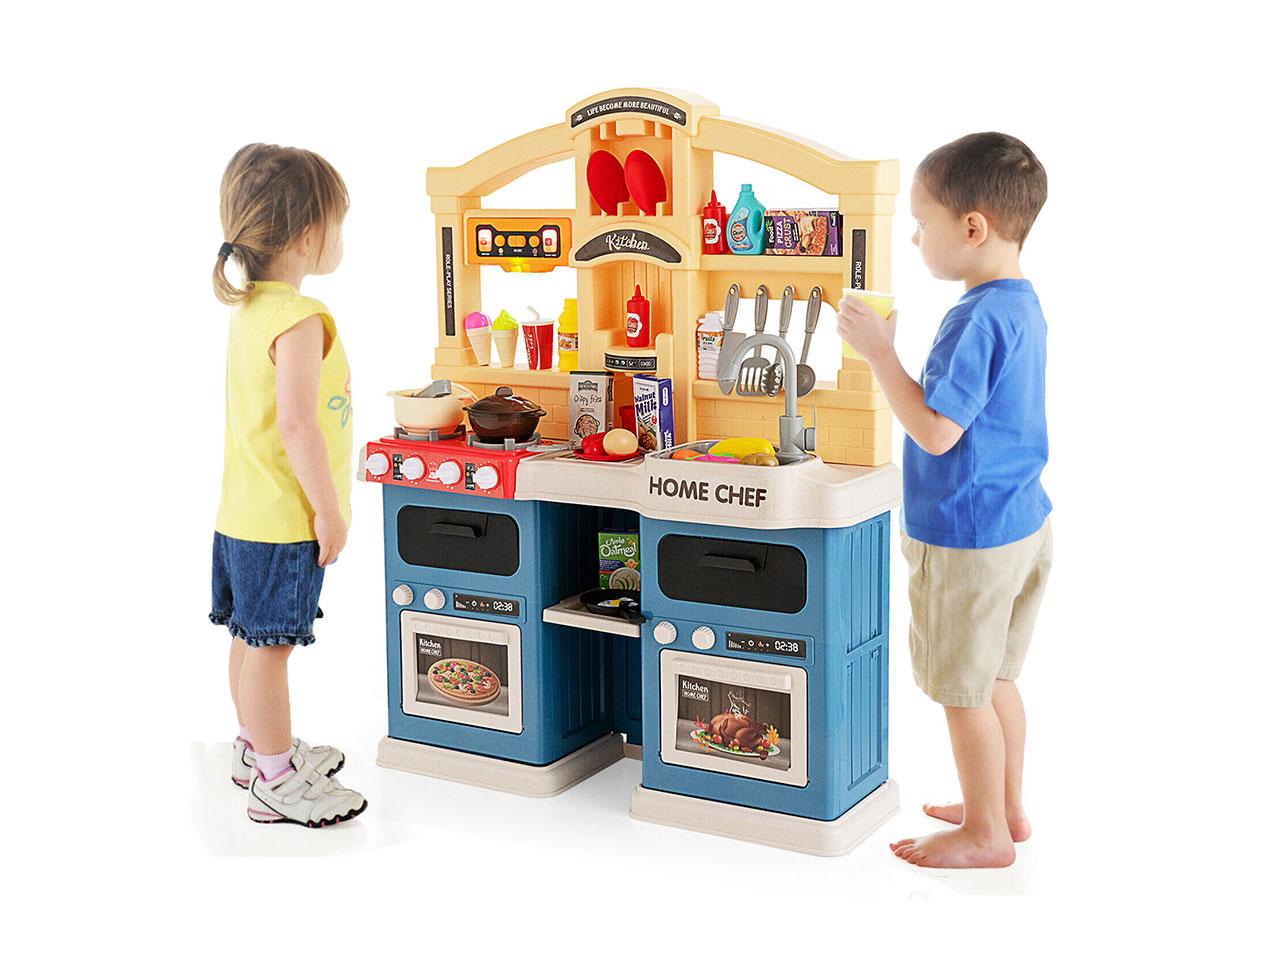 Dětská kuchyňka TP10035BL, včetně příslušenství, se světly, zvuky, jídlem, modrá, 66 x 23 x 83 cm